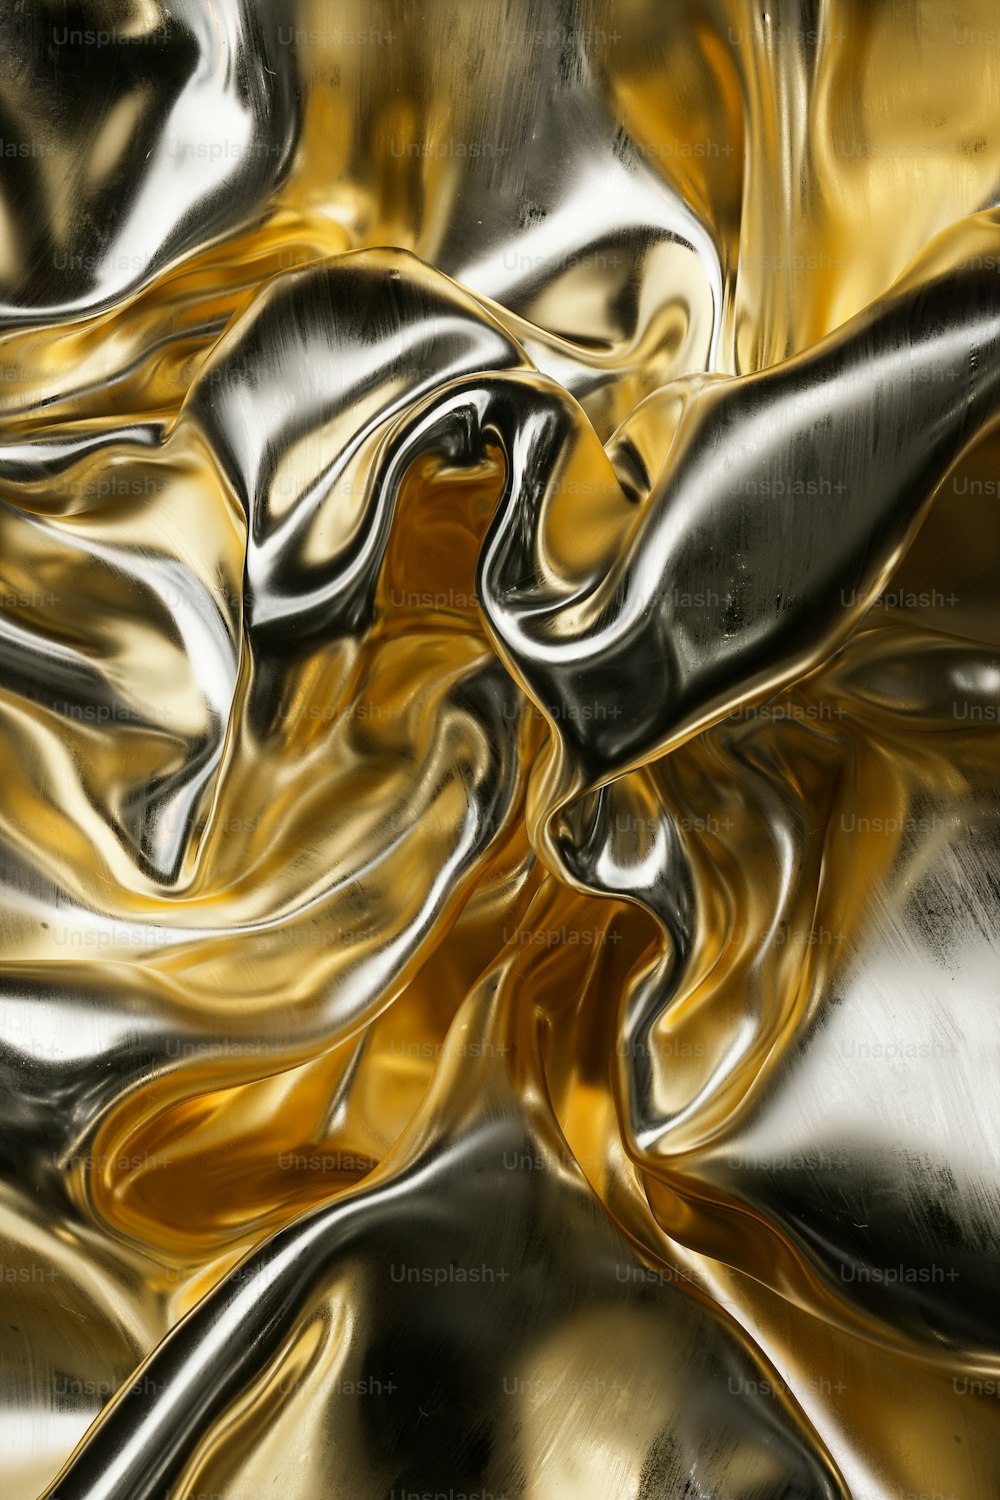 Un primer plano de una superficie metálica con colores dorado y plateado